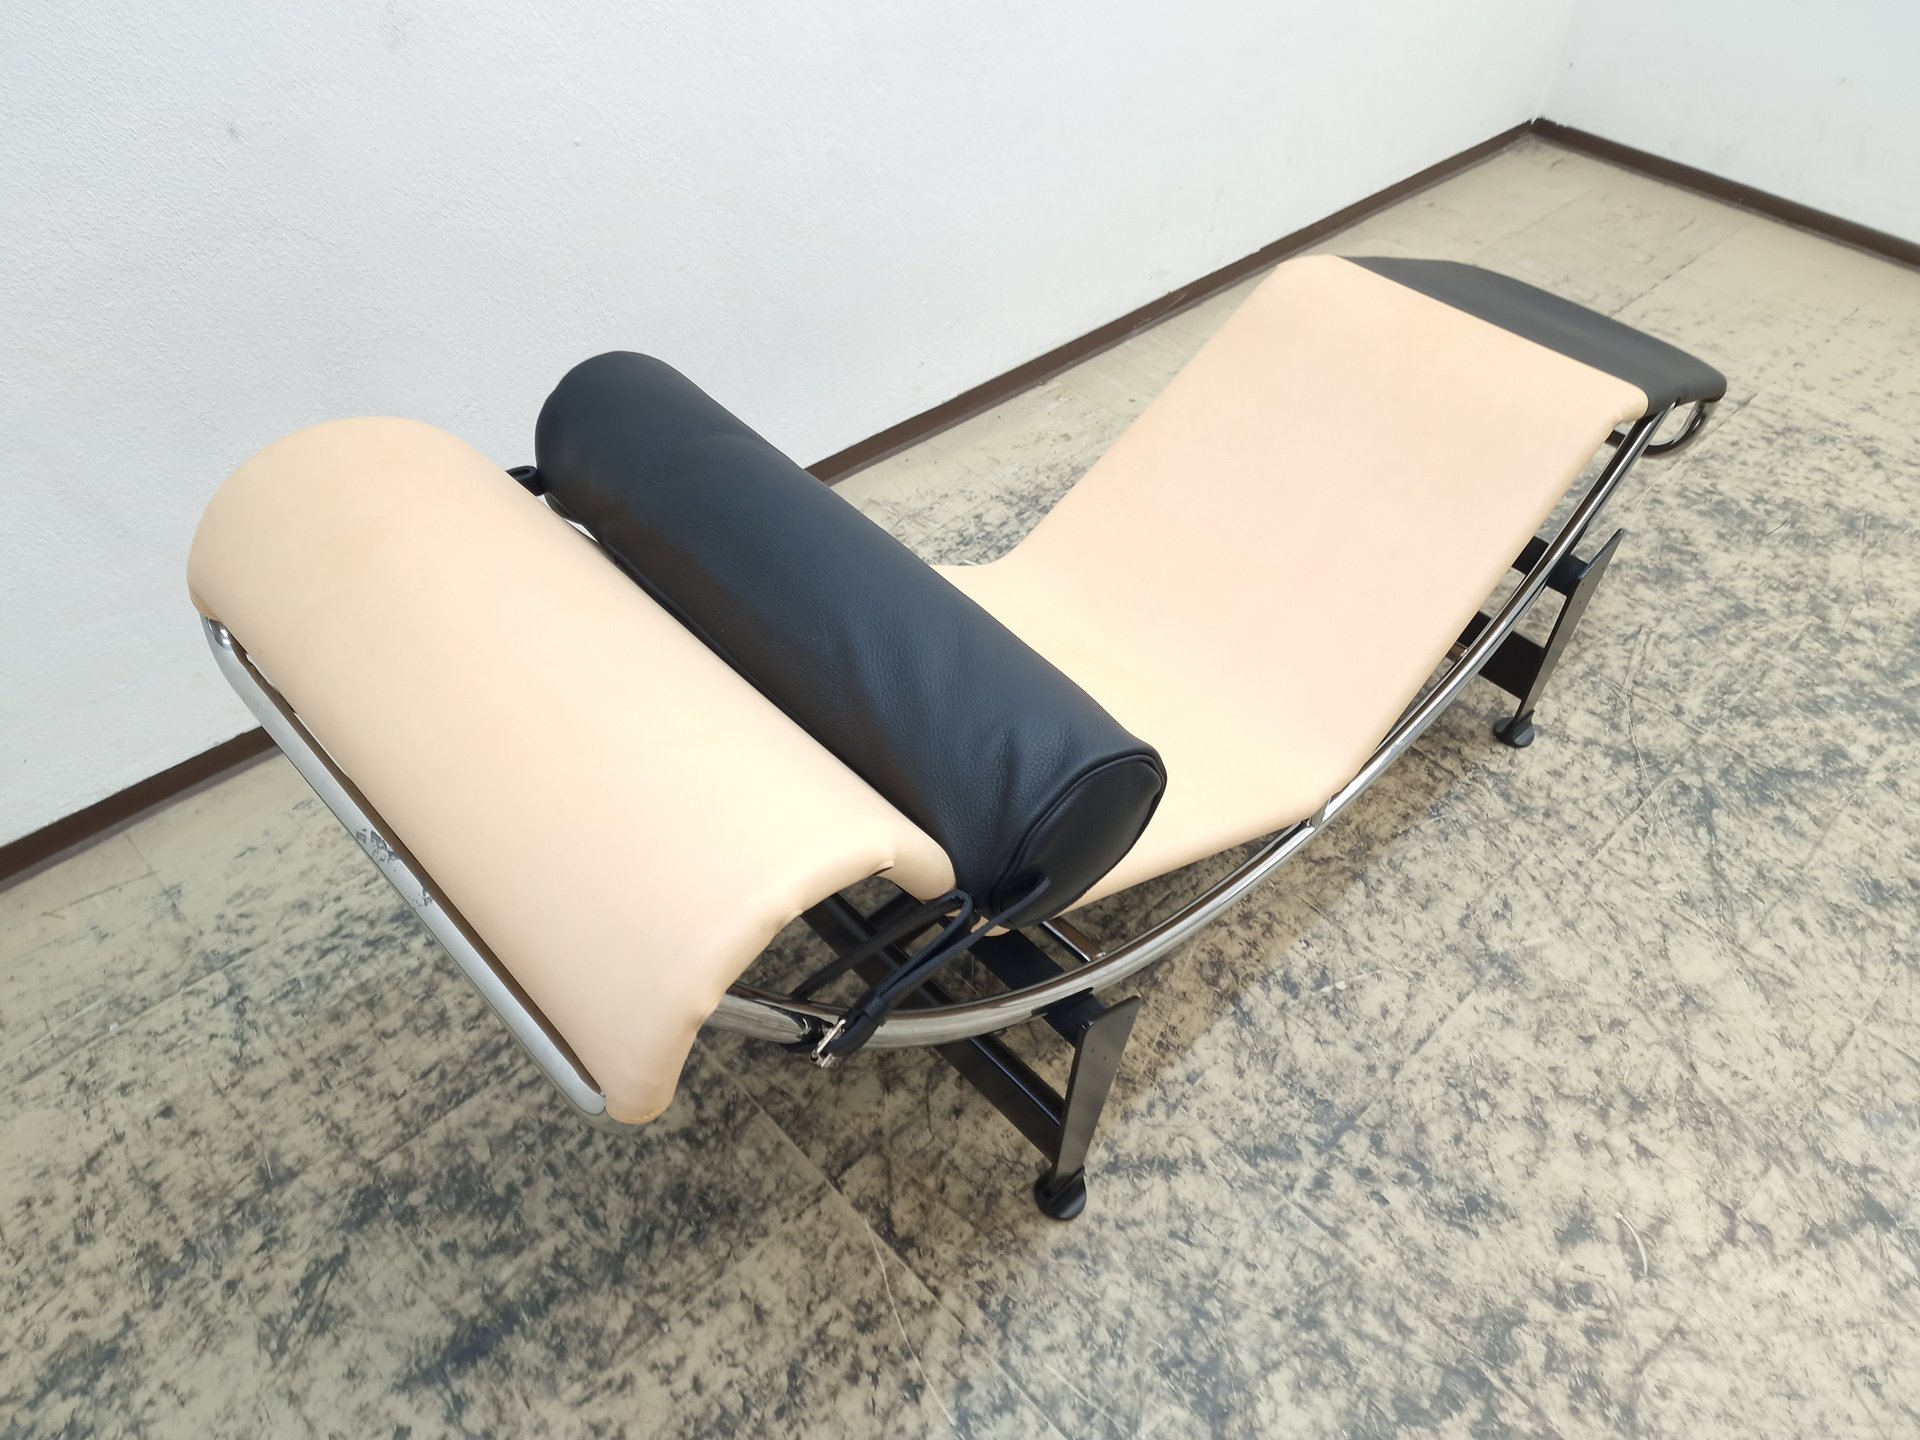 2x Cassina Lc4 Louis Vuitton lounger chaise longue, € 17,000